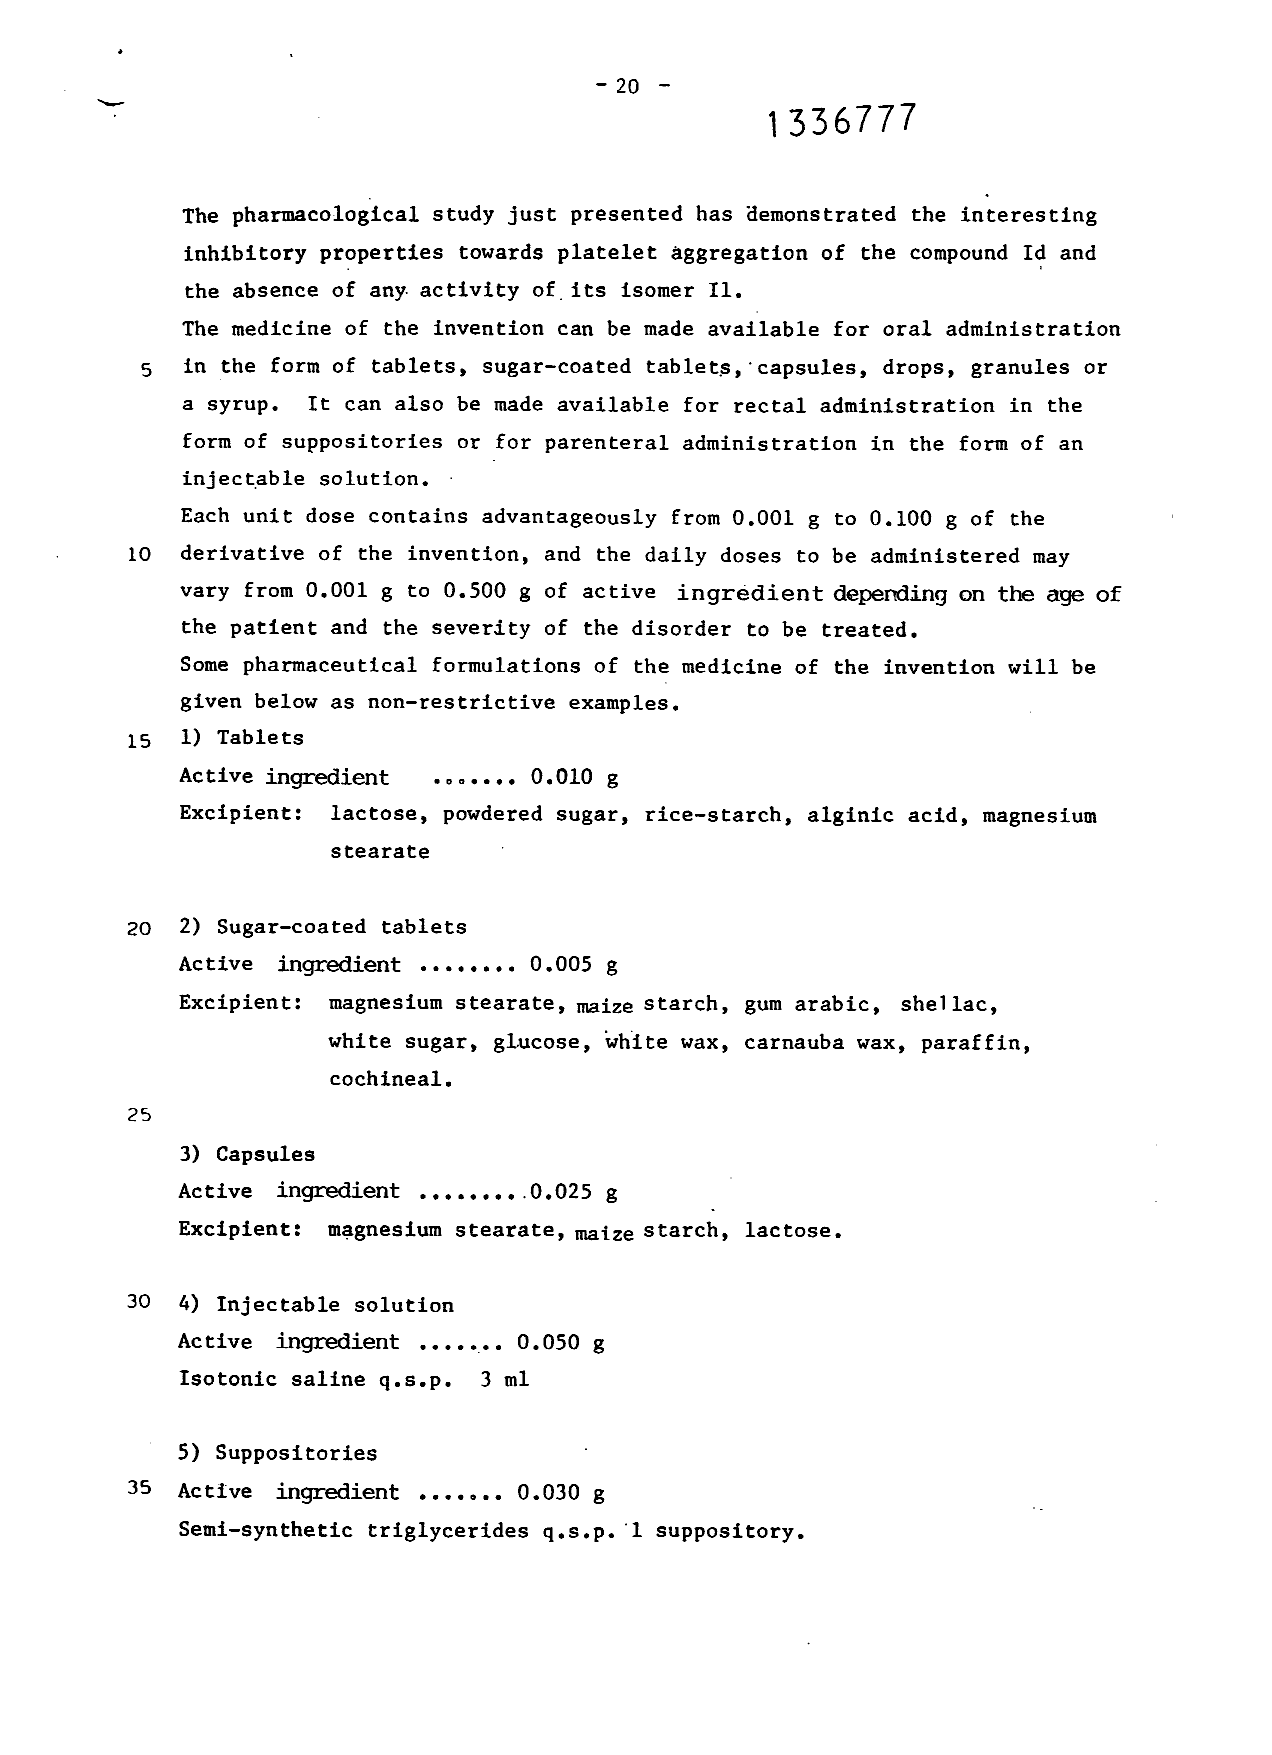 Document de brevet canadien 1336777. Description 19941222. Image 20 de 21